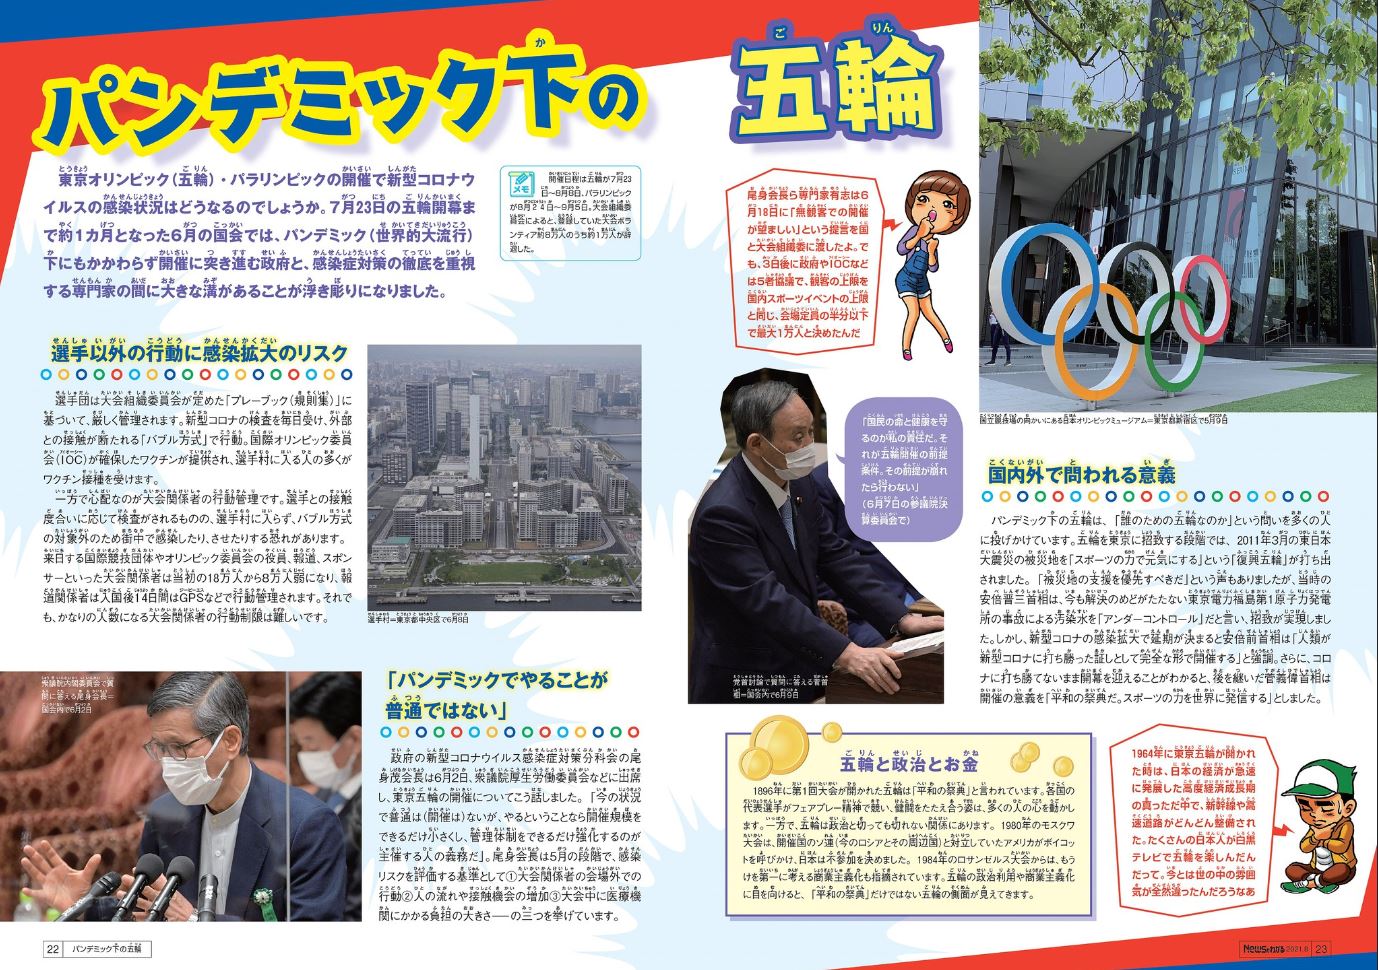 東京オリンピック 夏休み自由研究 ニュースがわかるオンライン